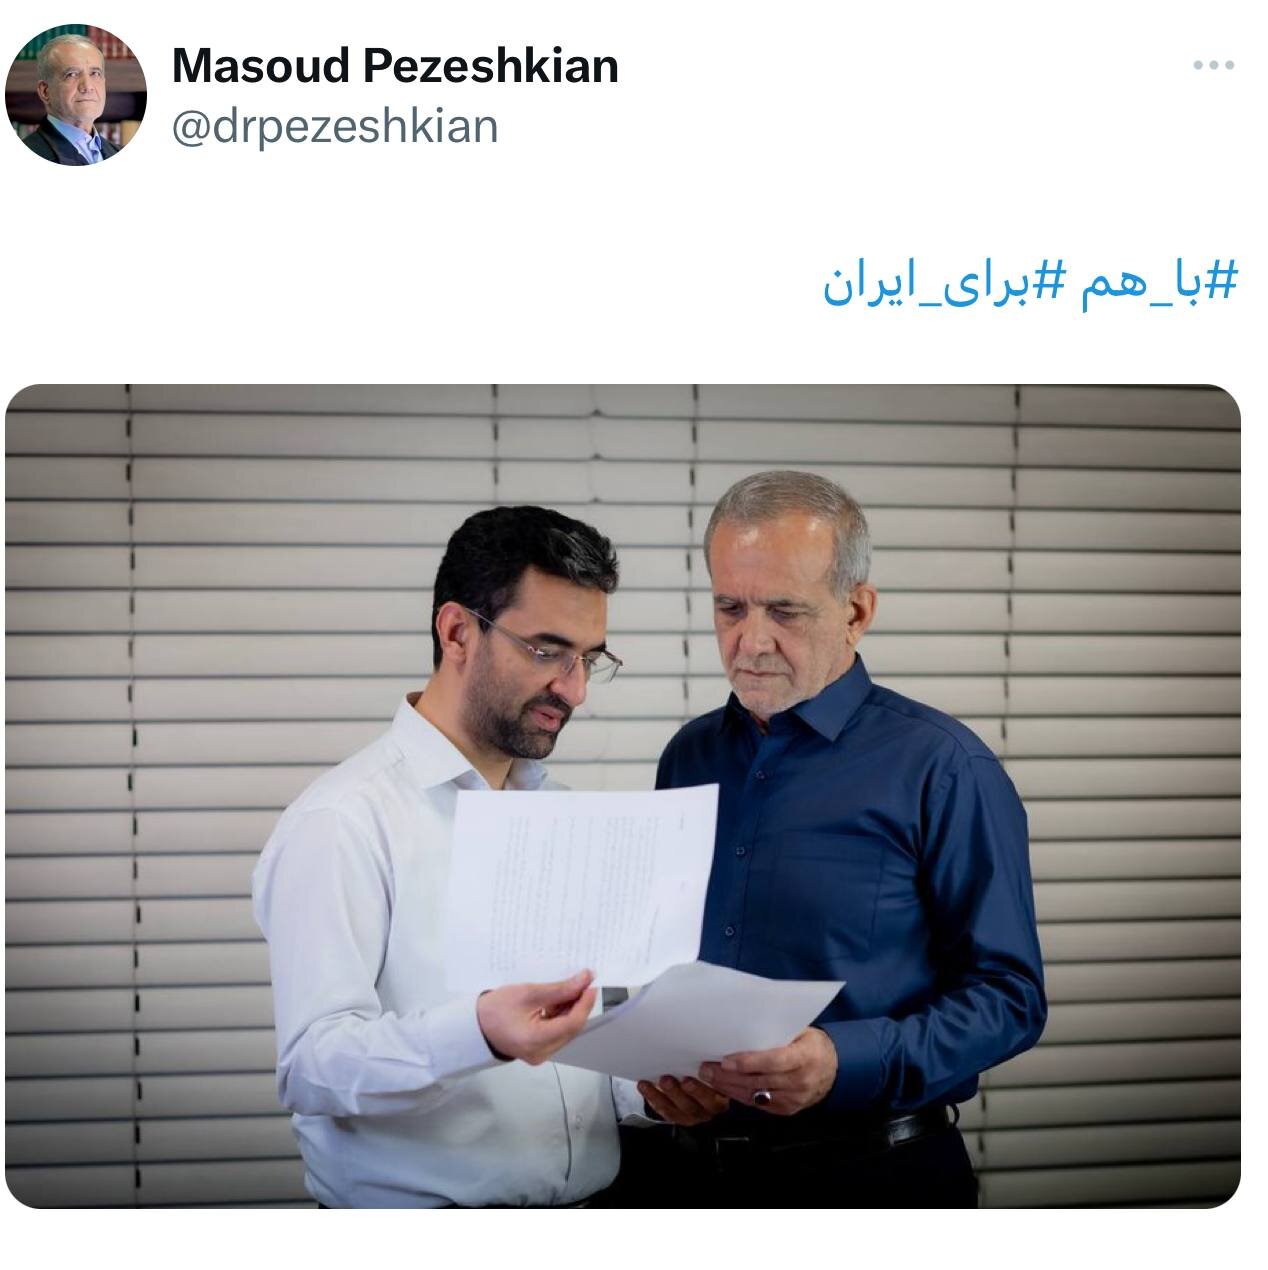 عکس معنادار توئیتر پزشکیان از آذری جهرمی /وزیر روحانی: به شایعات توجه نکنید، پای کار آقای پزشکیان ایستاده ایم، محکم و بدون تردید